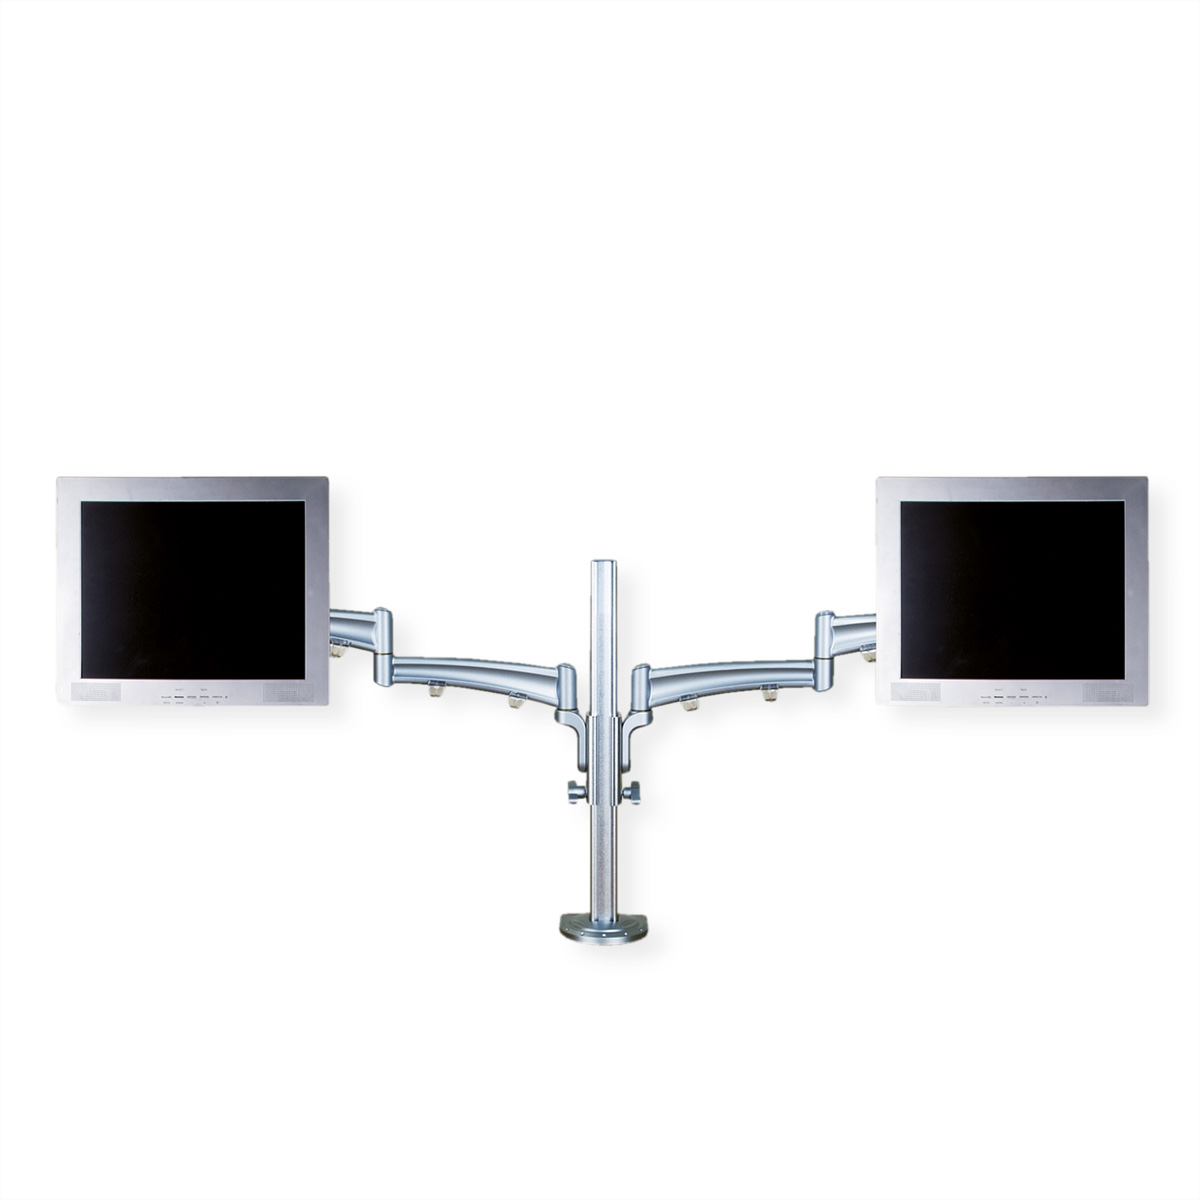 4 Tischmontage Monitorarm, Gelenke, separat höhenverstellbar Tisch-Trägerstange, VALUE LCD-Doppelarm